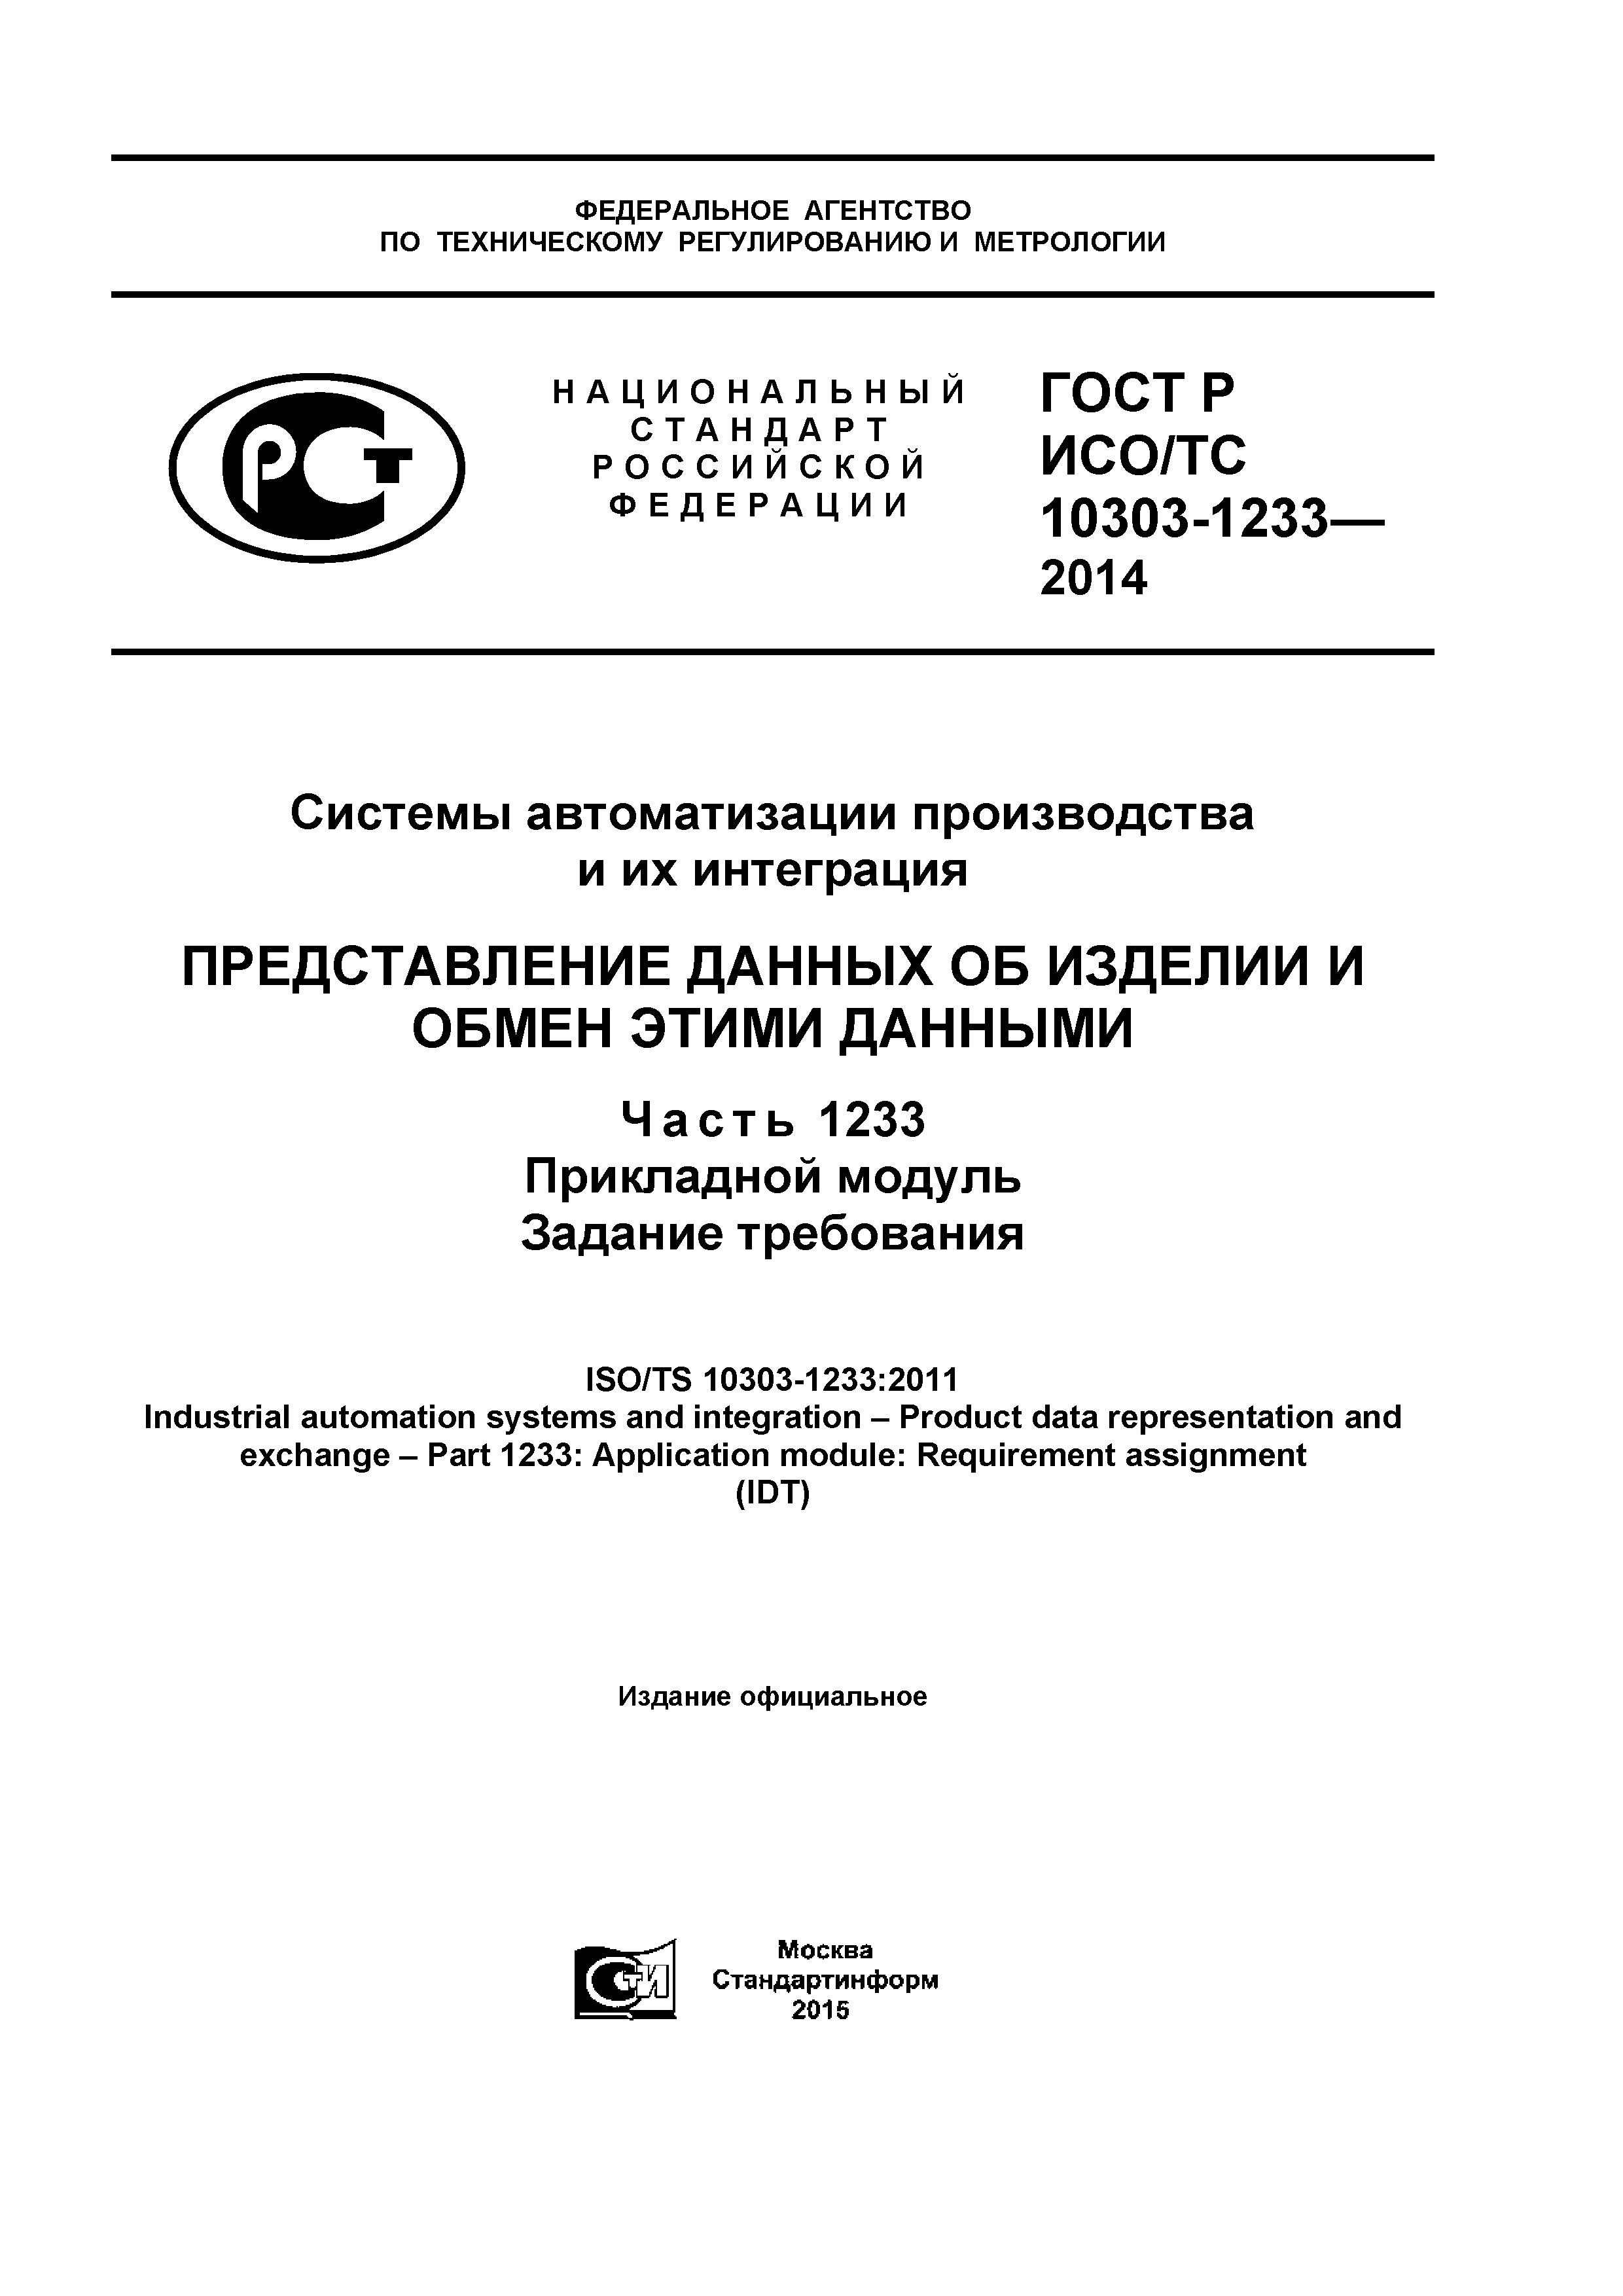 ГОСТ Р ИСО/ТС 10303-1233-2014